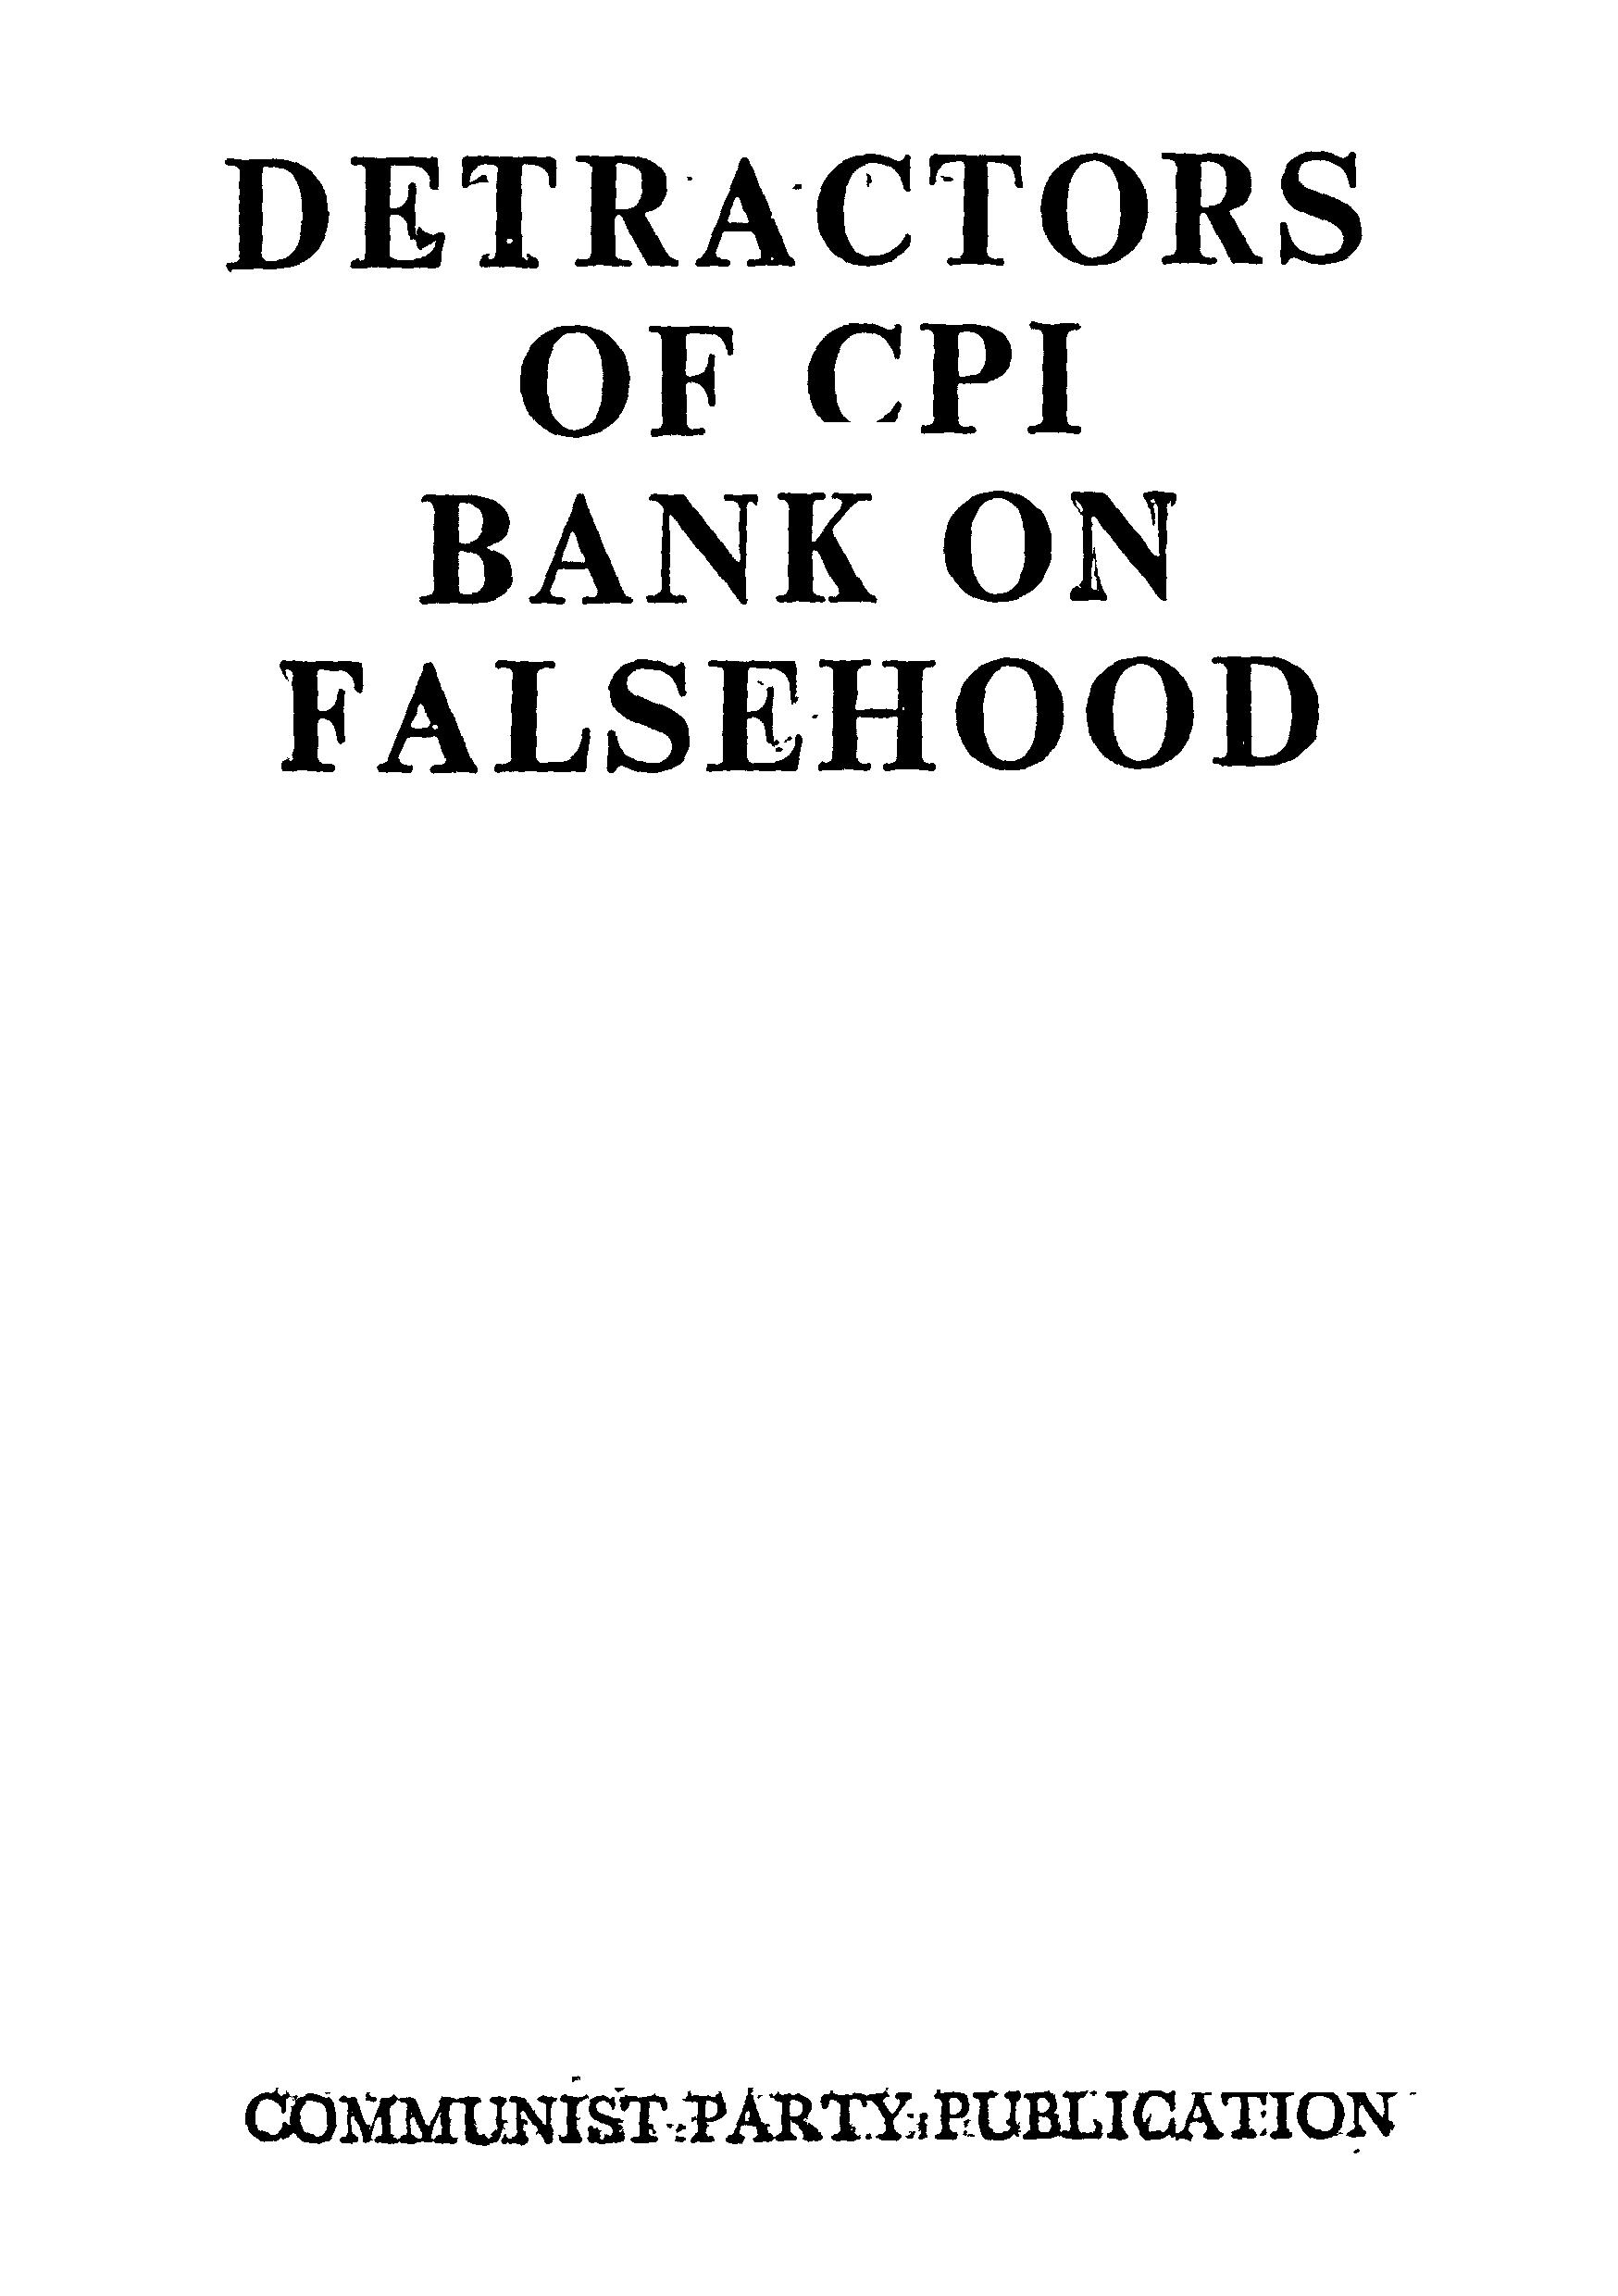 DETRACTORS OF CPI BANK ON FALSEHOOD